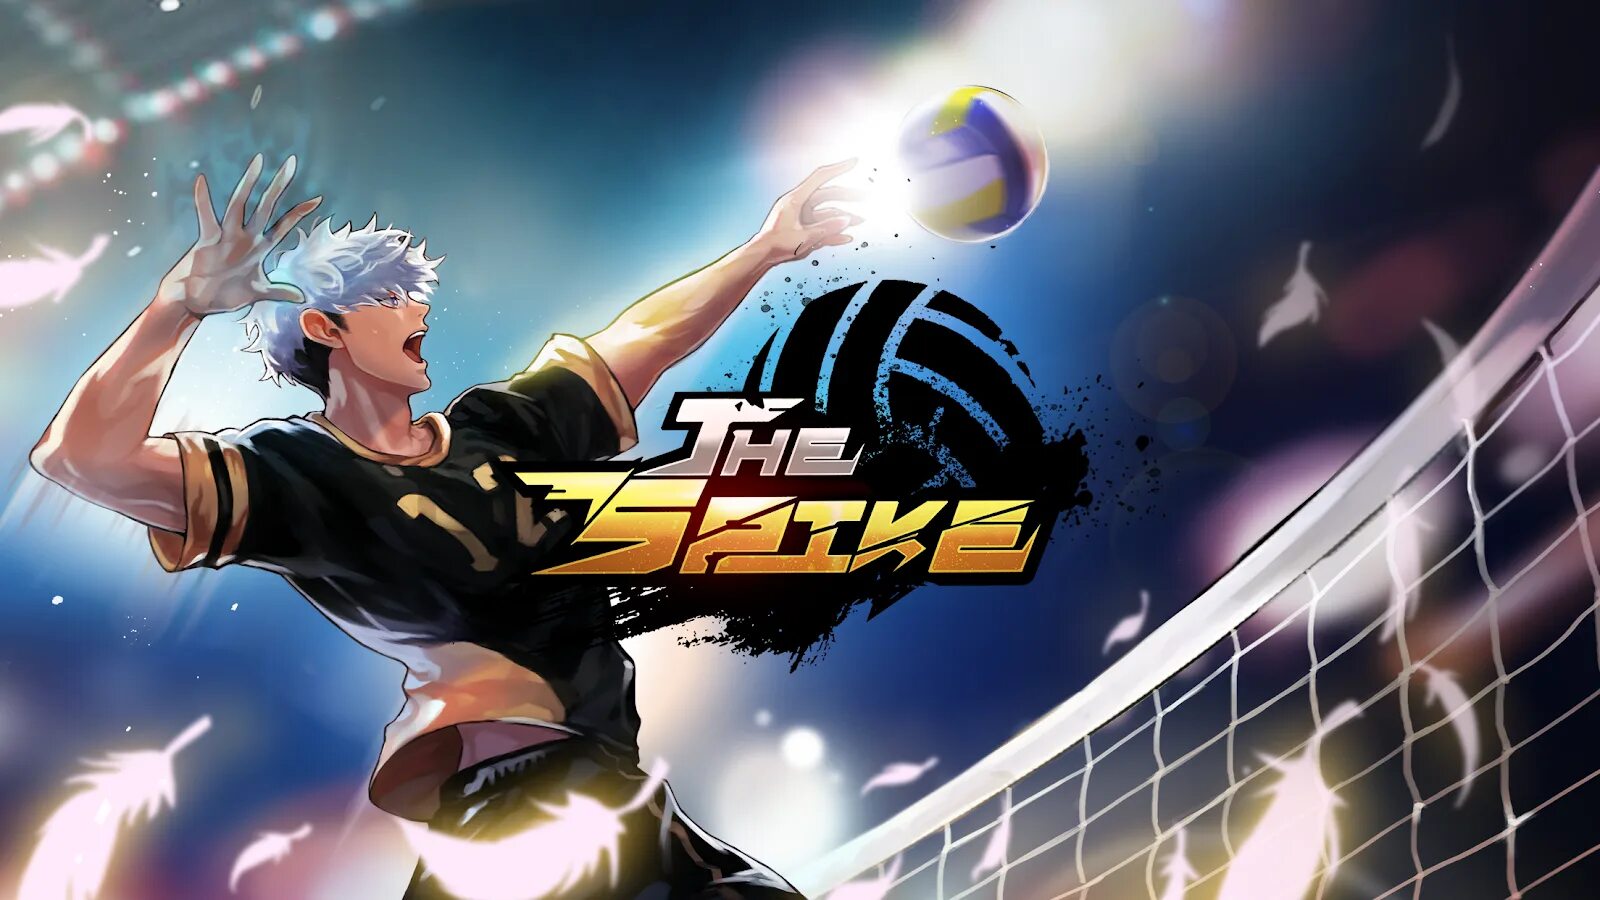 Игра the Spike. The Spike Volleyball игра. The Spike Volleyball story. Nishikawa волейбол the Spike. Волейбол игра на андроид